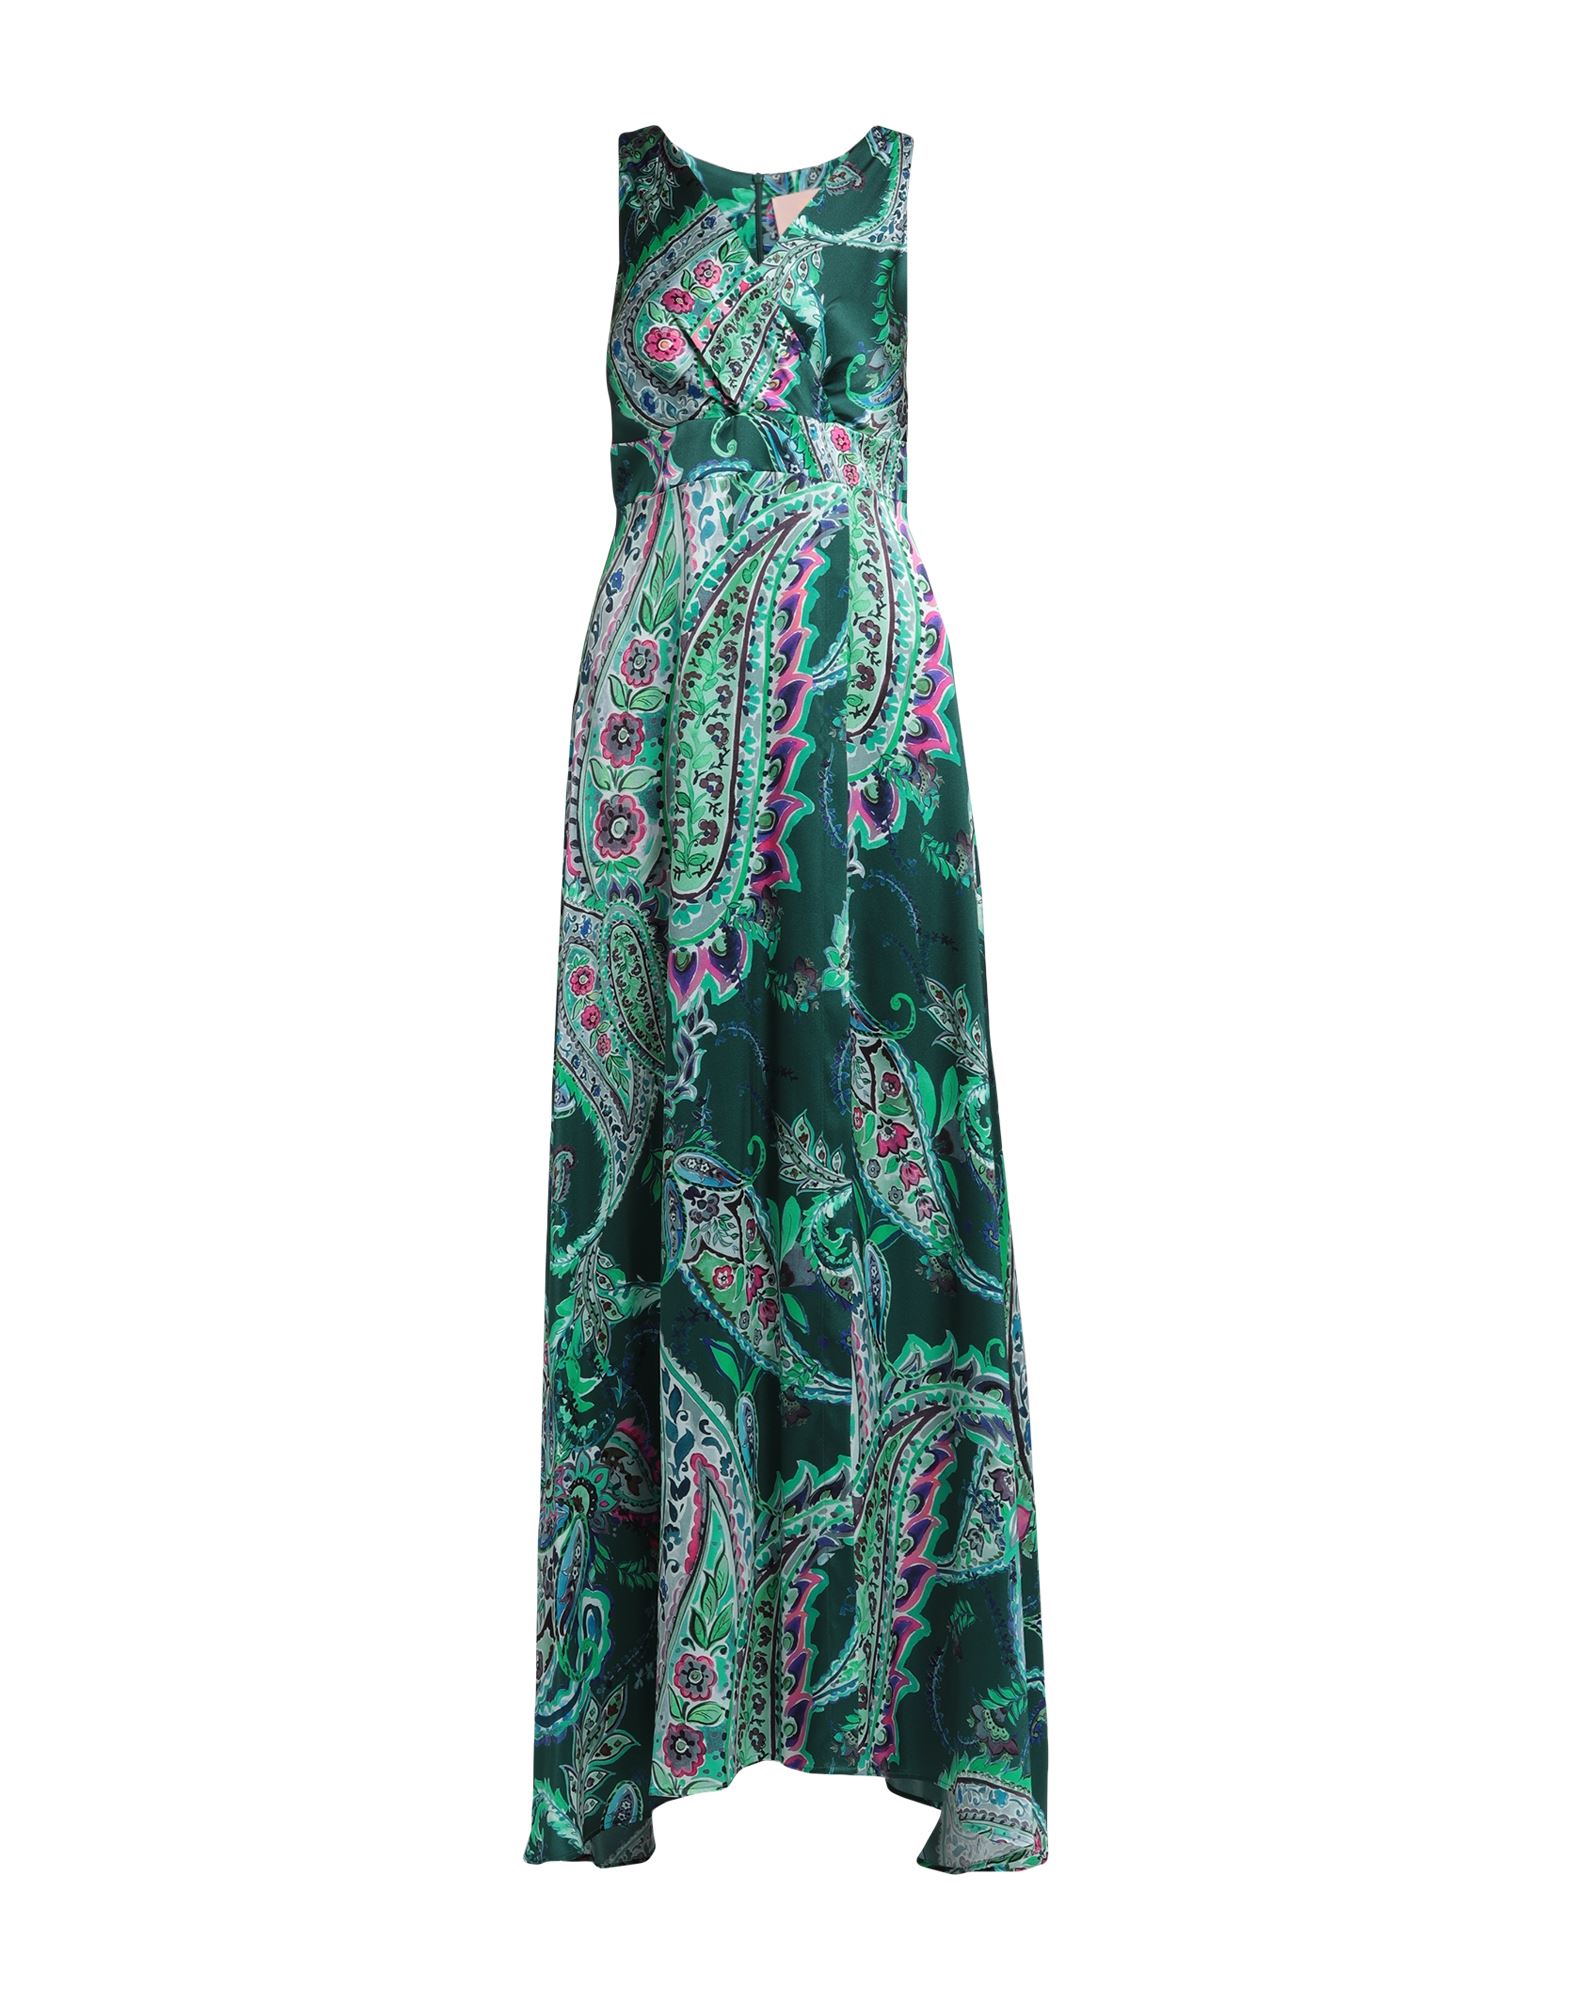 Kitagi® Kitagi Woman Maxi Dress Dark Green Size 10 Silk, Elastane